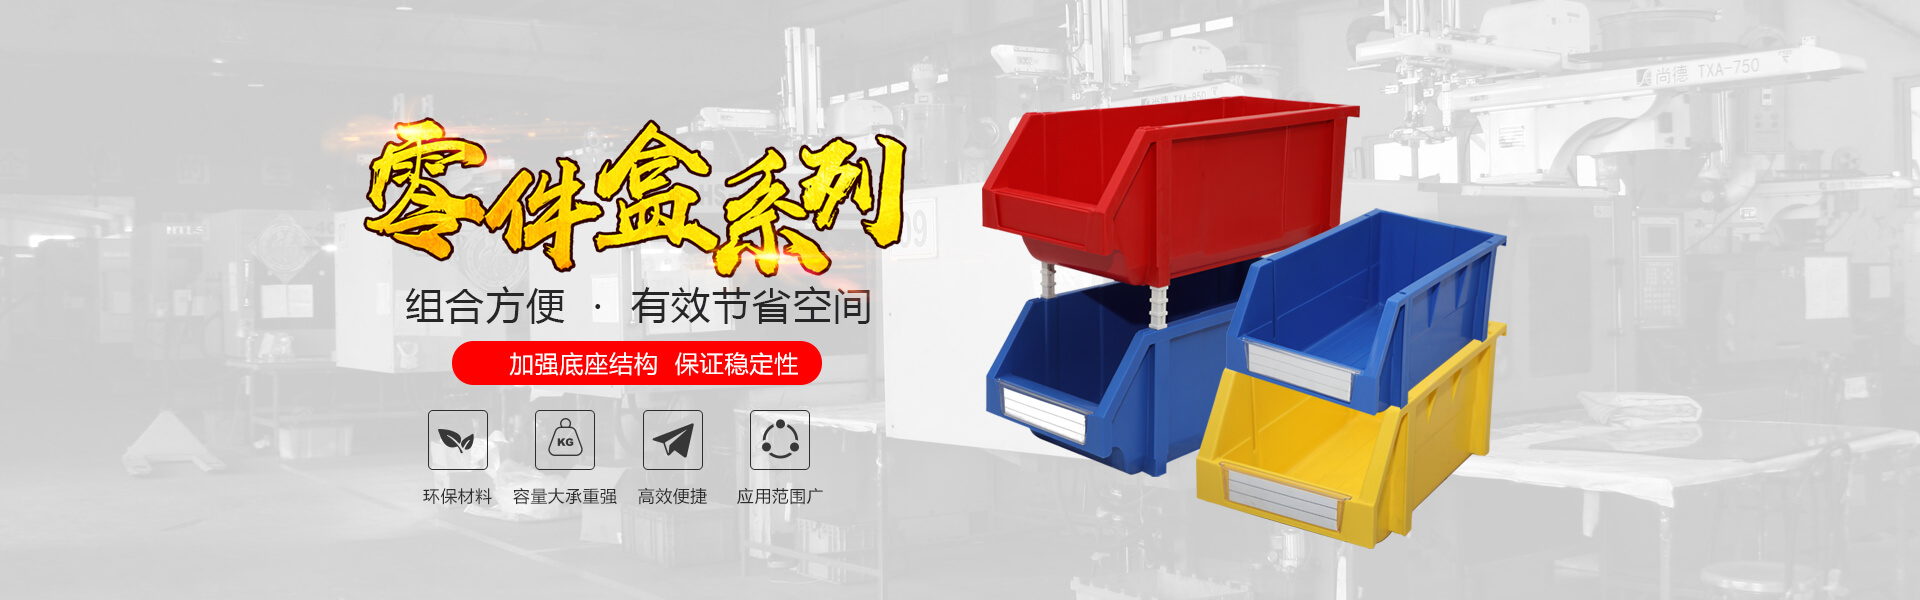 青岛九游会自动化主营零件盒,塑料零件盒,塑料托盘等产品!